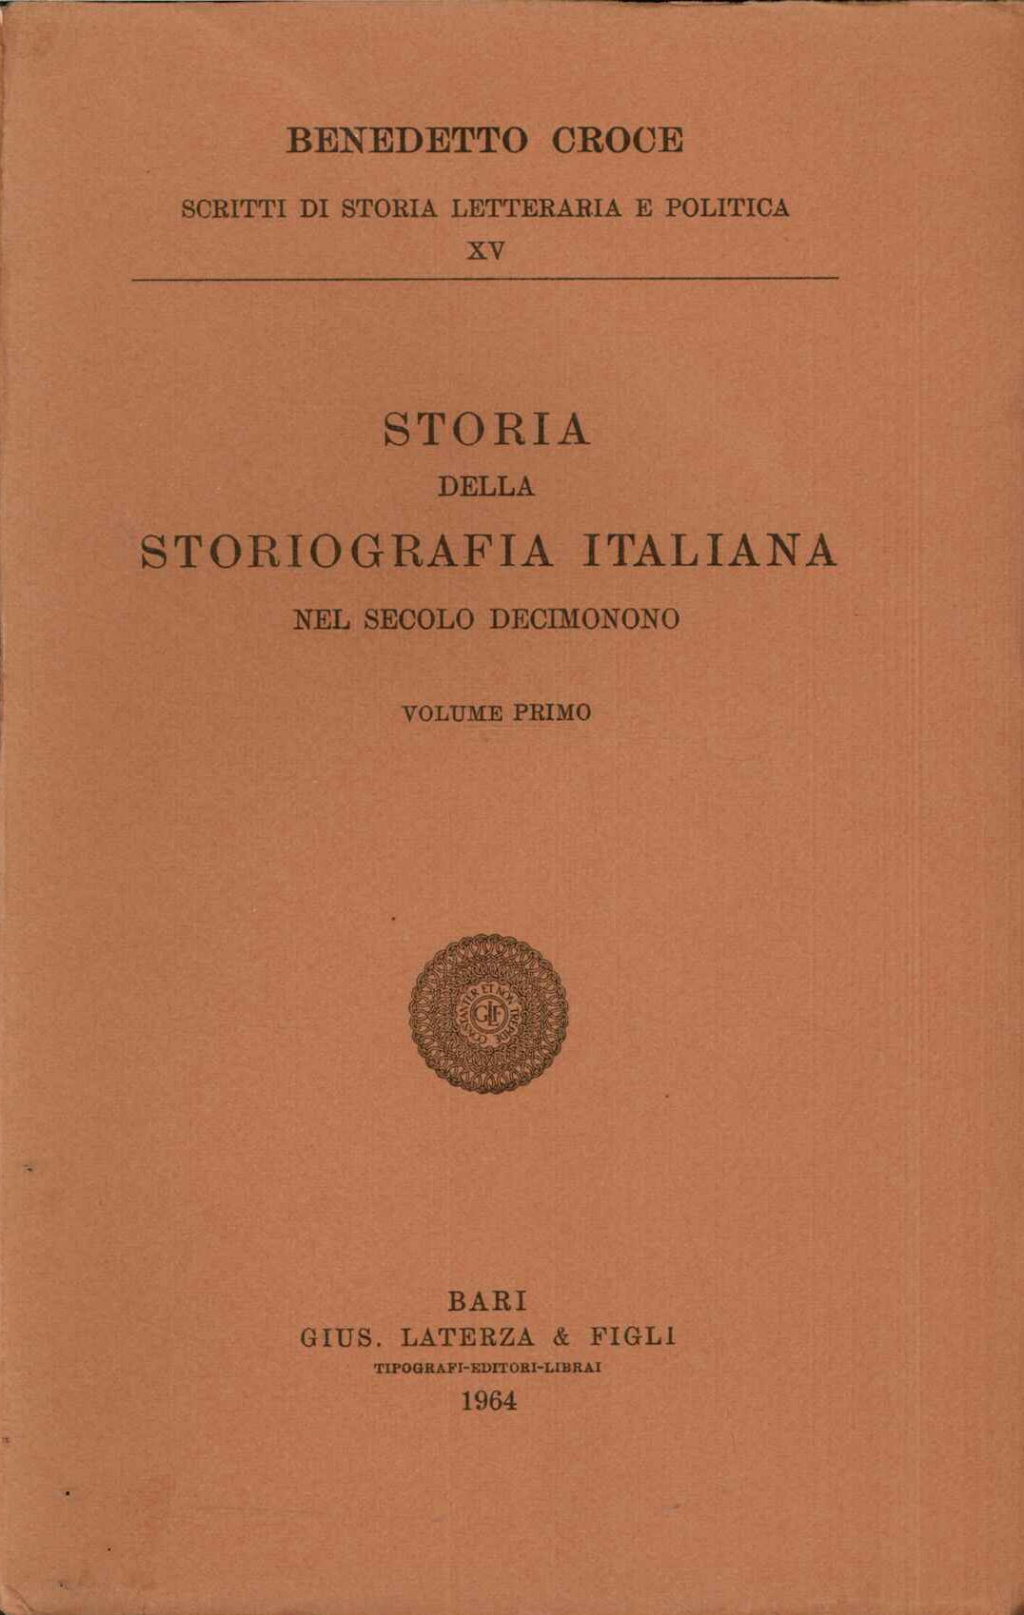 Storia della storiografia italiana nel secolo decimonono. Vol. primo